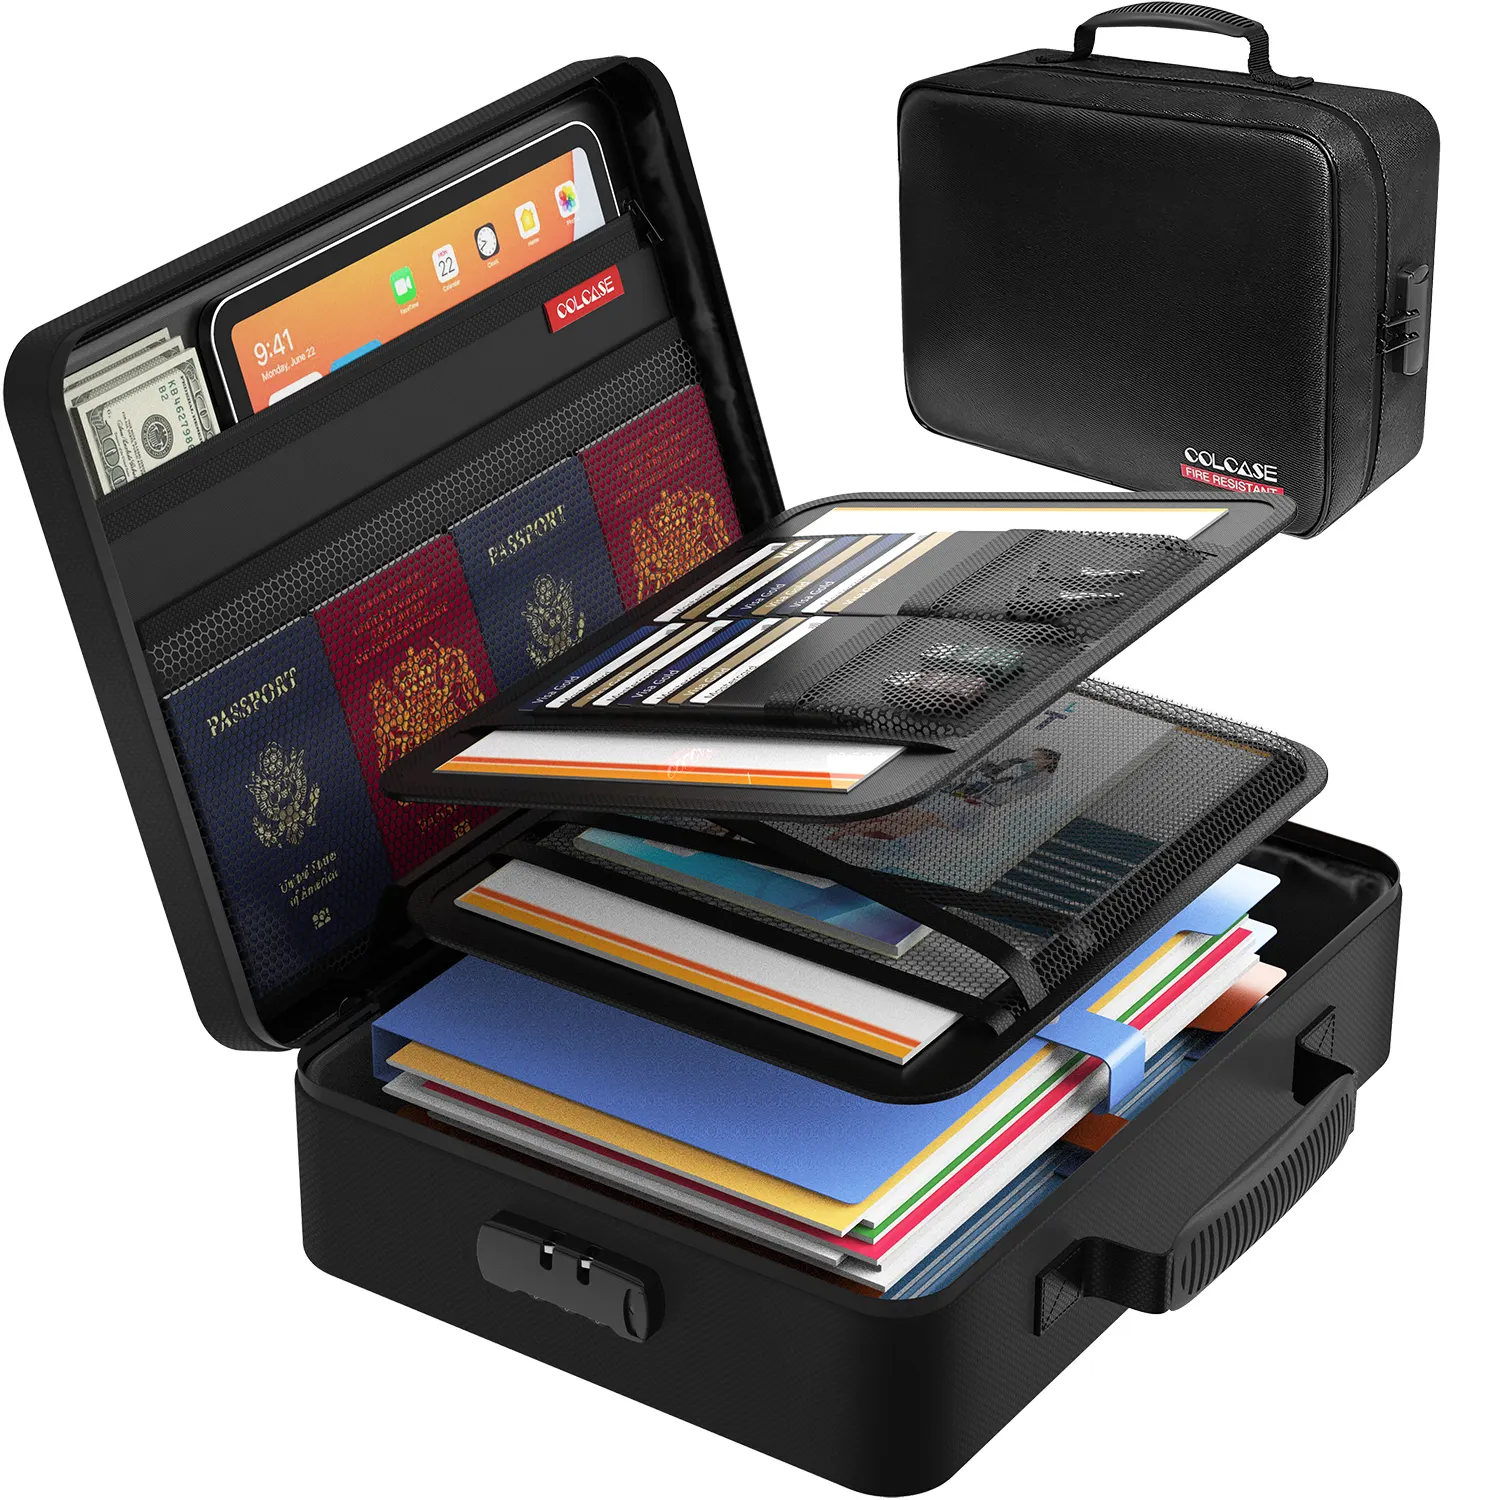 คุณภาพสูงทนไฟกระเป๋าล็อคกล่องจัดระเบียบ Passport อุปกรณ์เสริมกระเป๋ากันไฟกรณีทนไฟเอกสารกล่อง